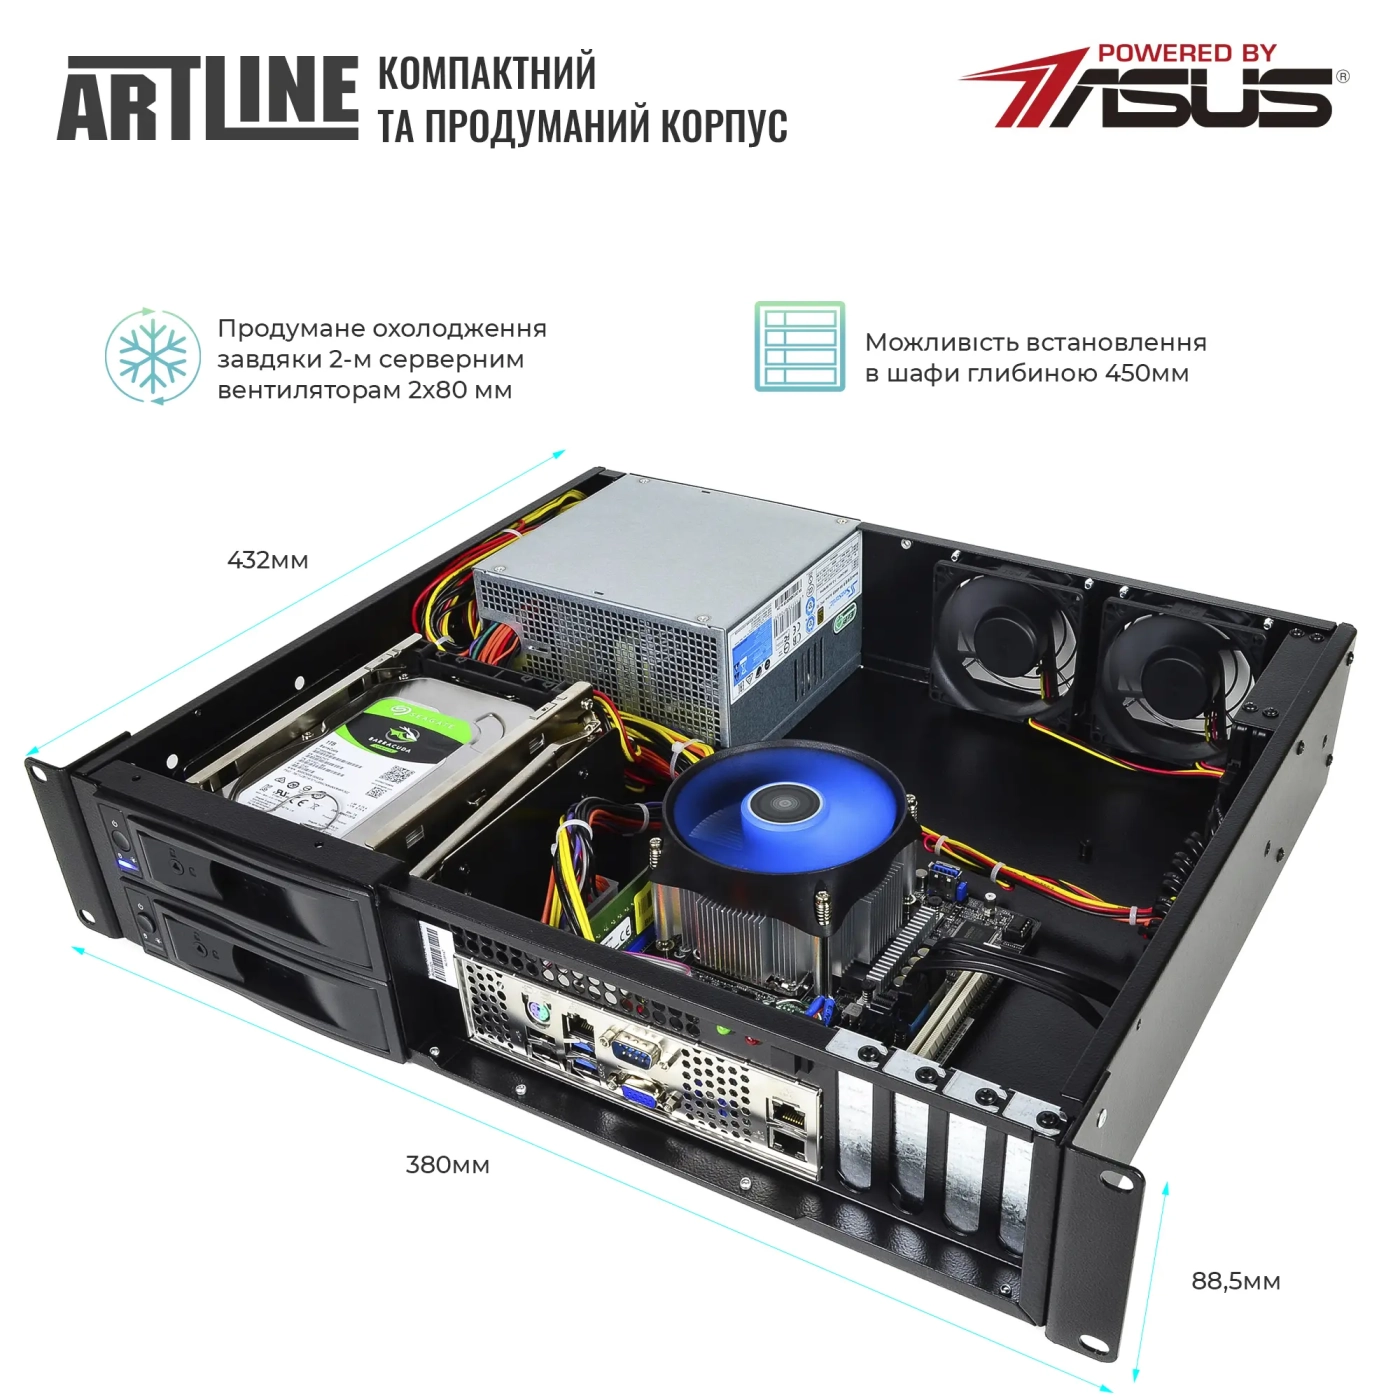 Купить Сервер ARTLINE Business R37 (R37v65) - фото 3